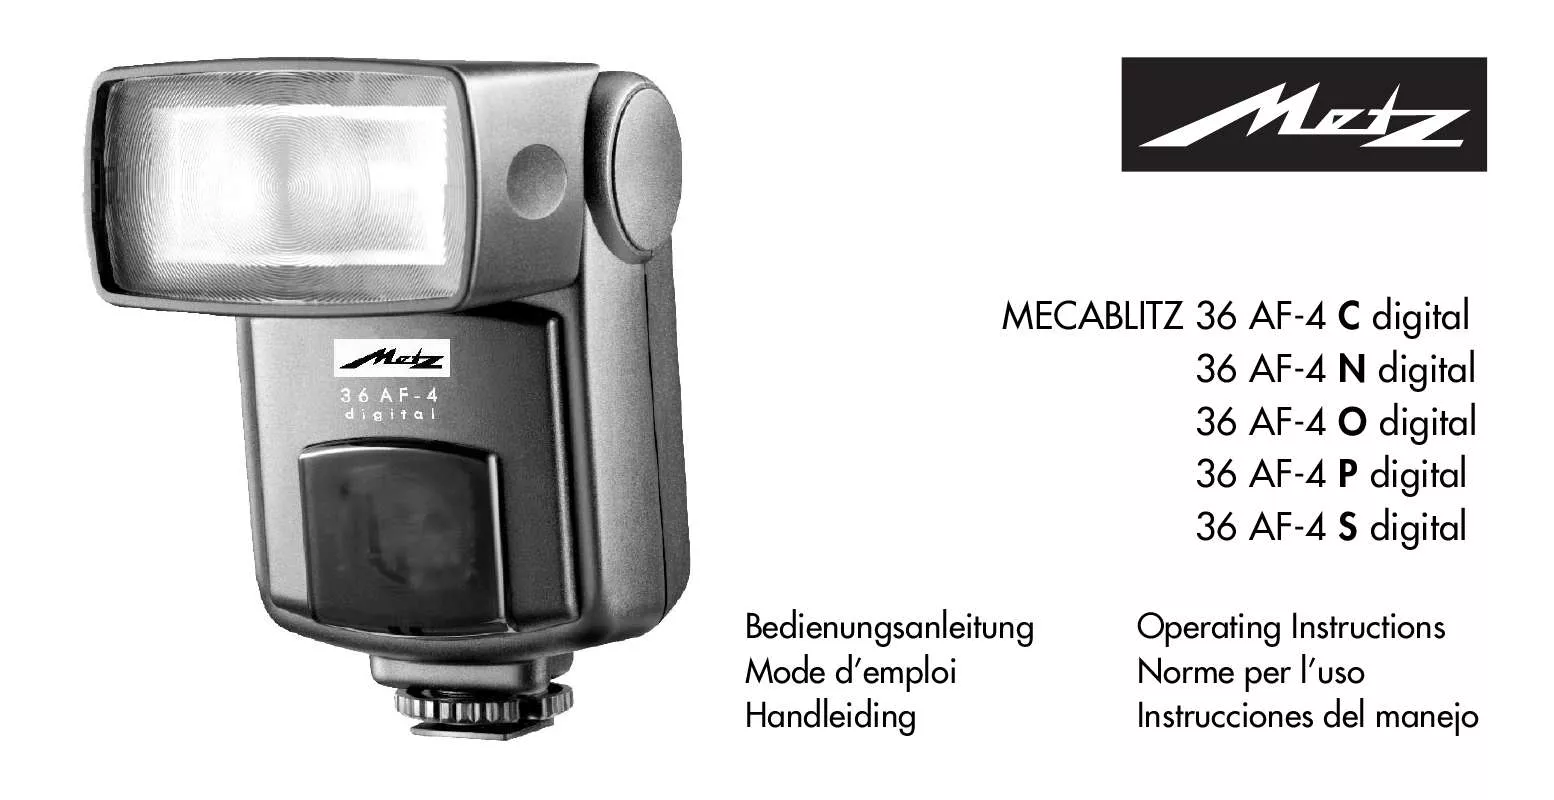 Mode d'emploi METZ MECABLITZ 36 AF-4 C DIGITAL